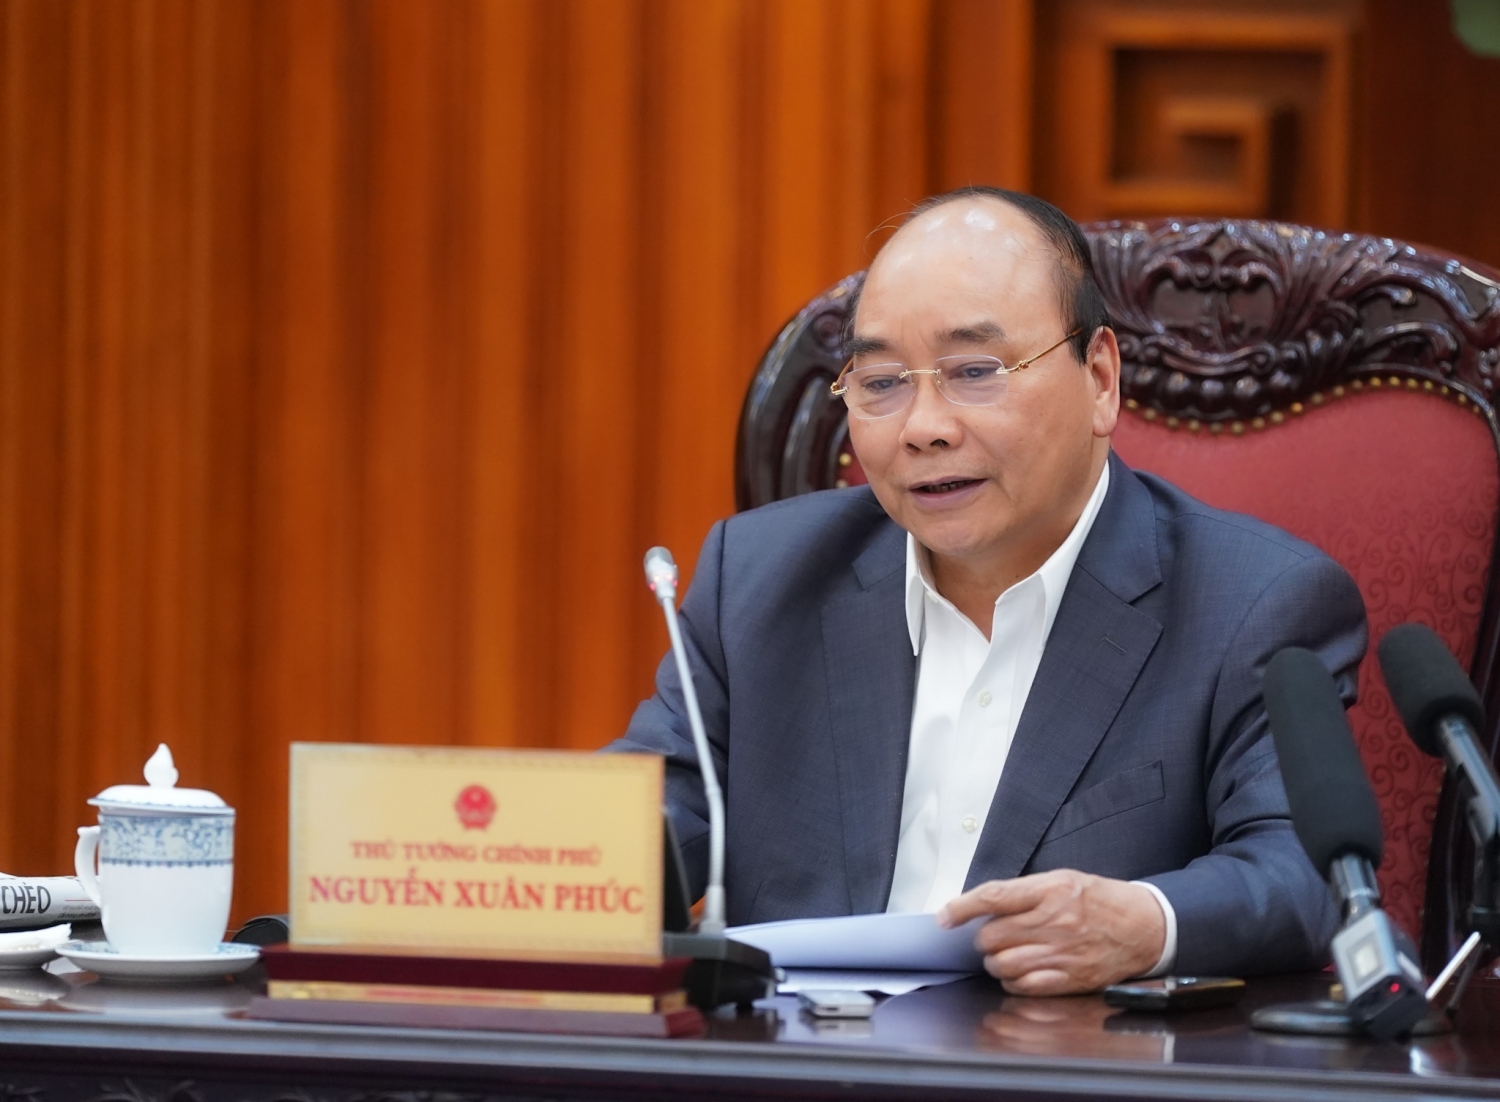 Thủ tướng Nguyễn Xuân Phúc làm việc trực tuyến với tỉnh Sóc Trăng